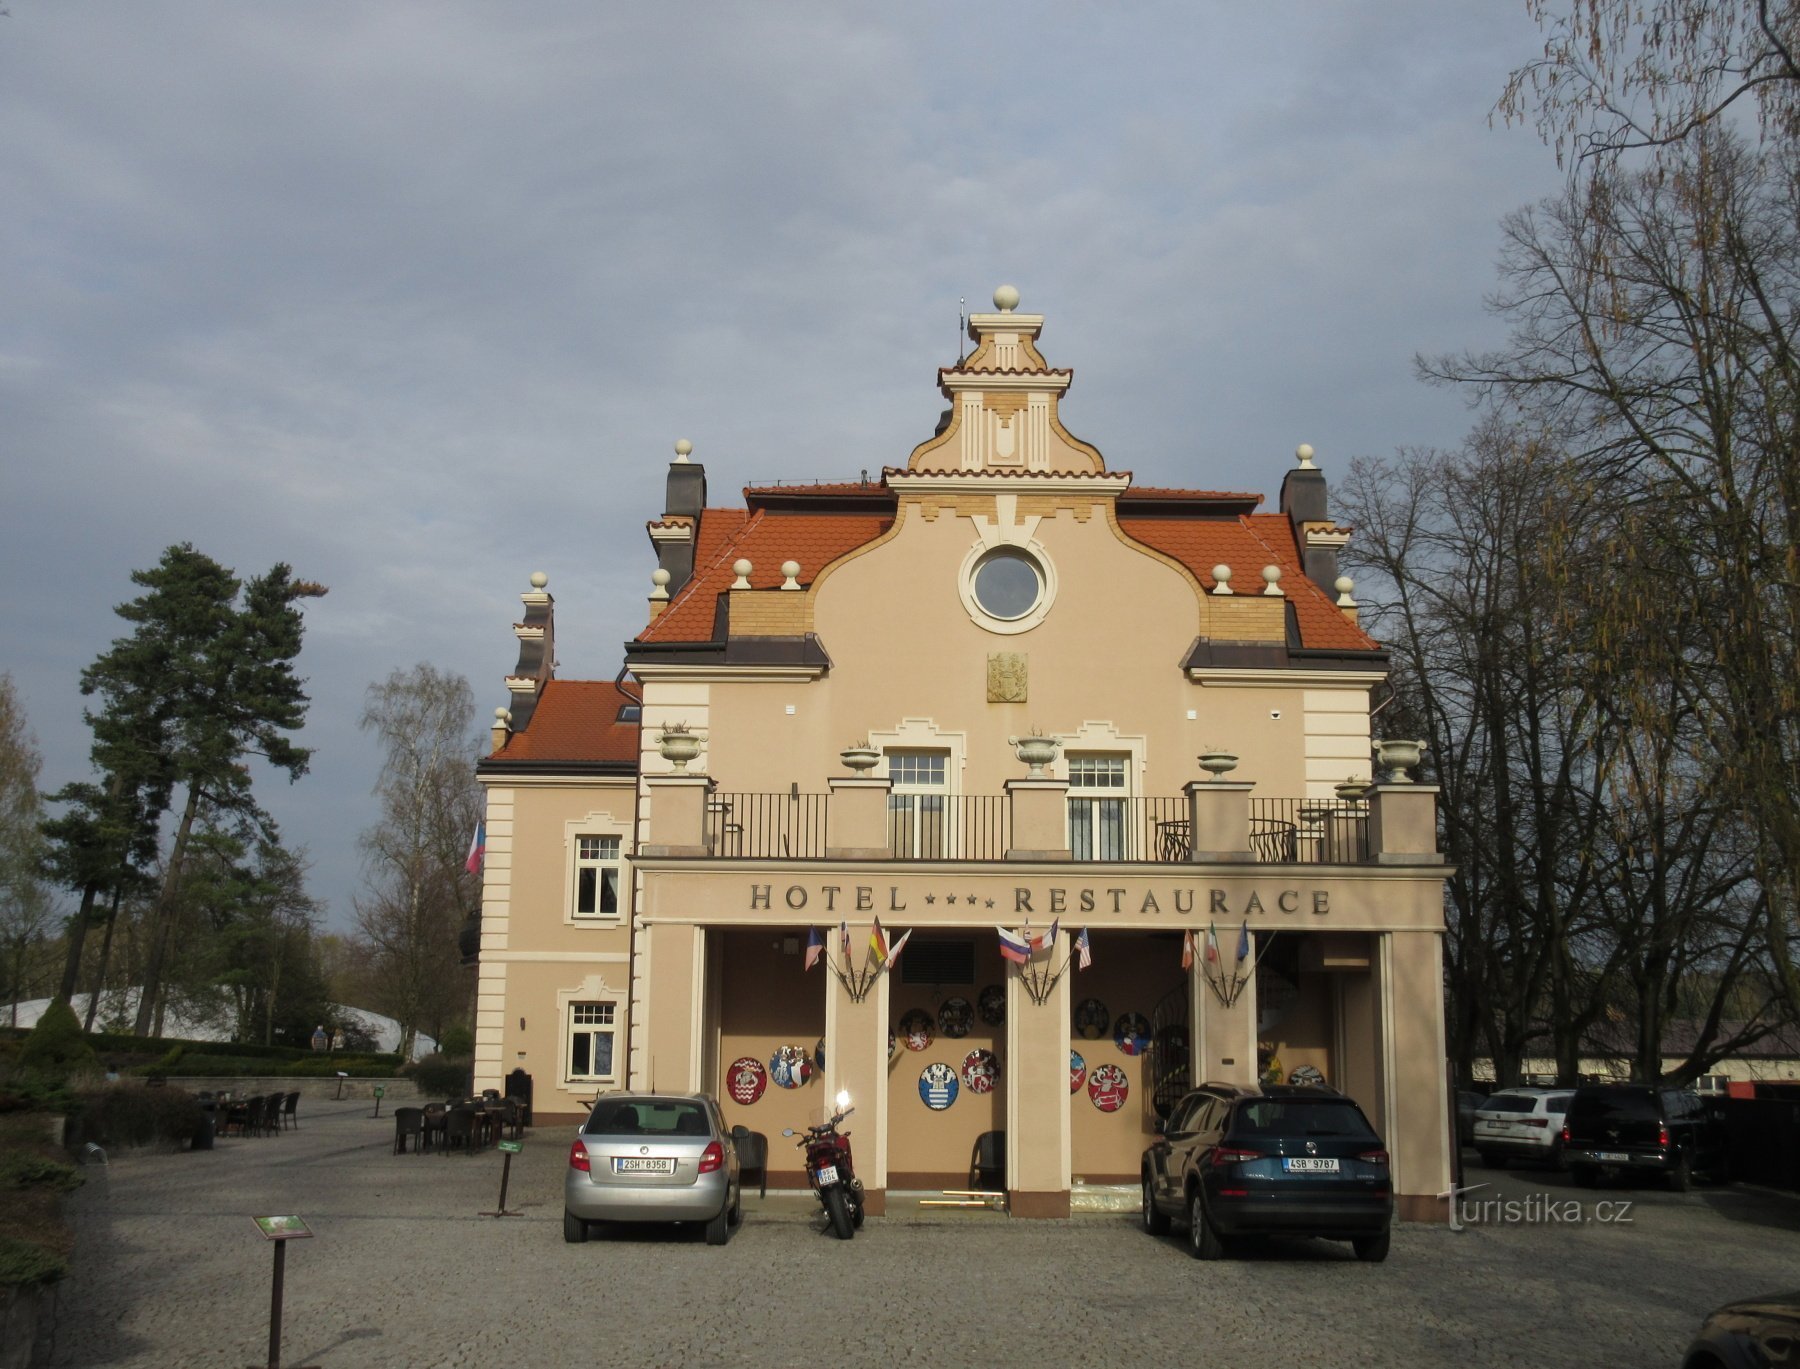 Kunice - Berchtold slot, en park med miniatureslotte og en uddannelsessti